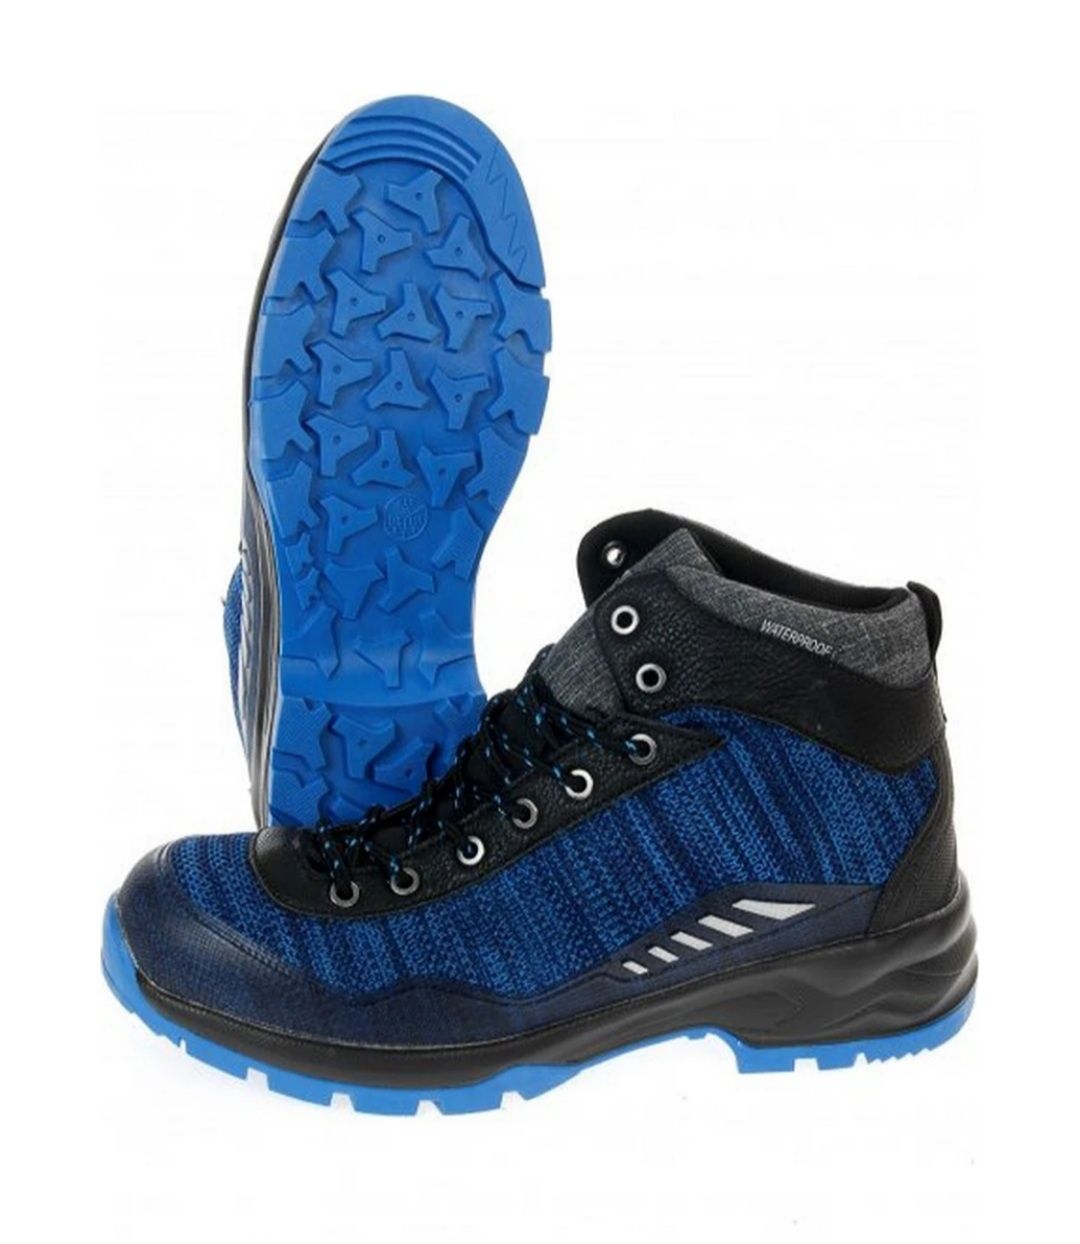 Crane Waterproof ботинки, кроссовки мужские трекинговые непромокаемые